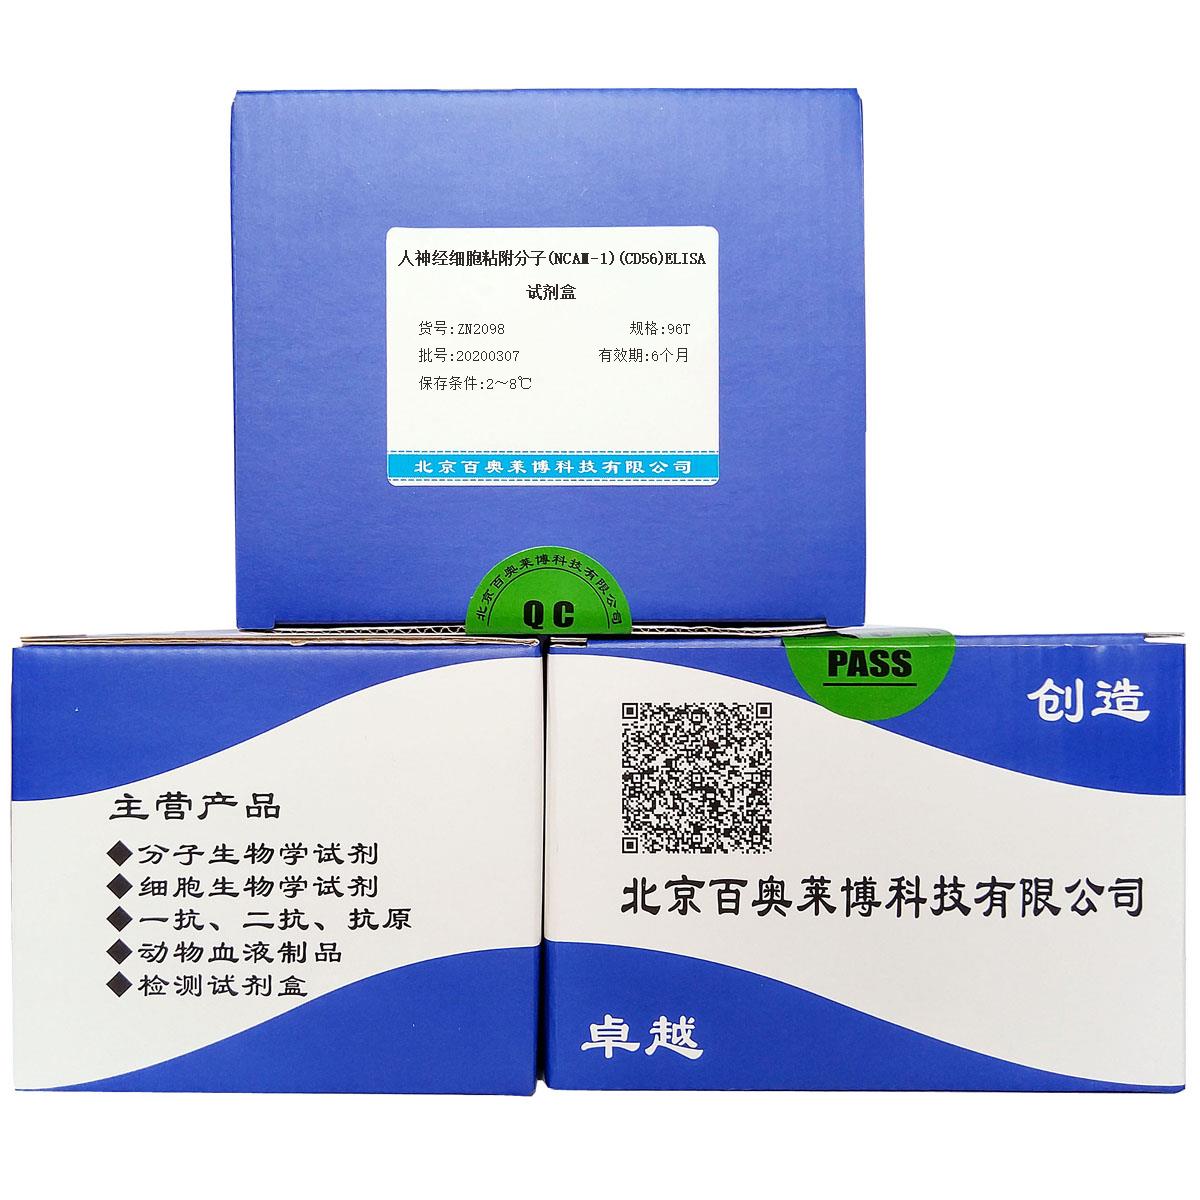 人神经细胞粘附分子(NCAM-1)(CD56)ELISA试剂盒